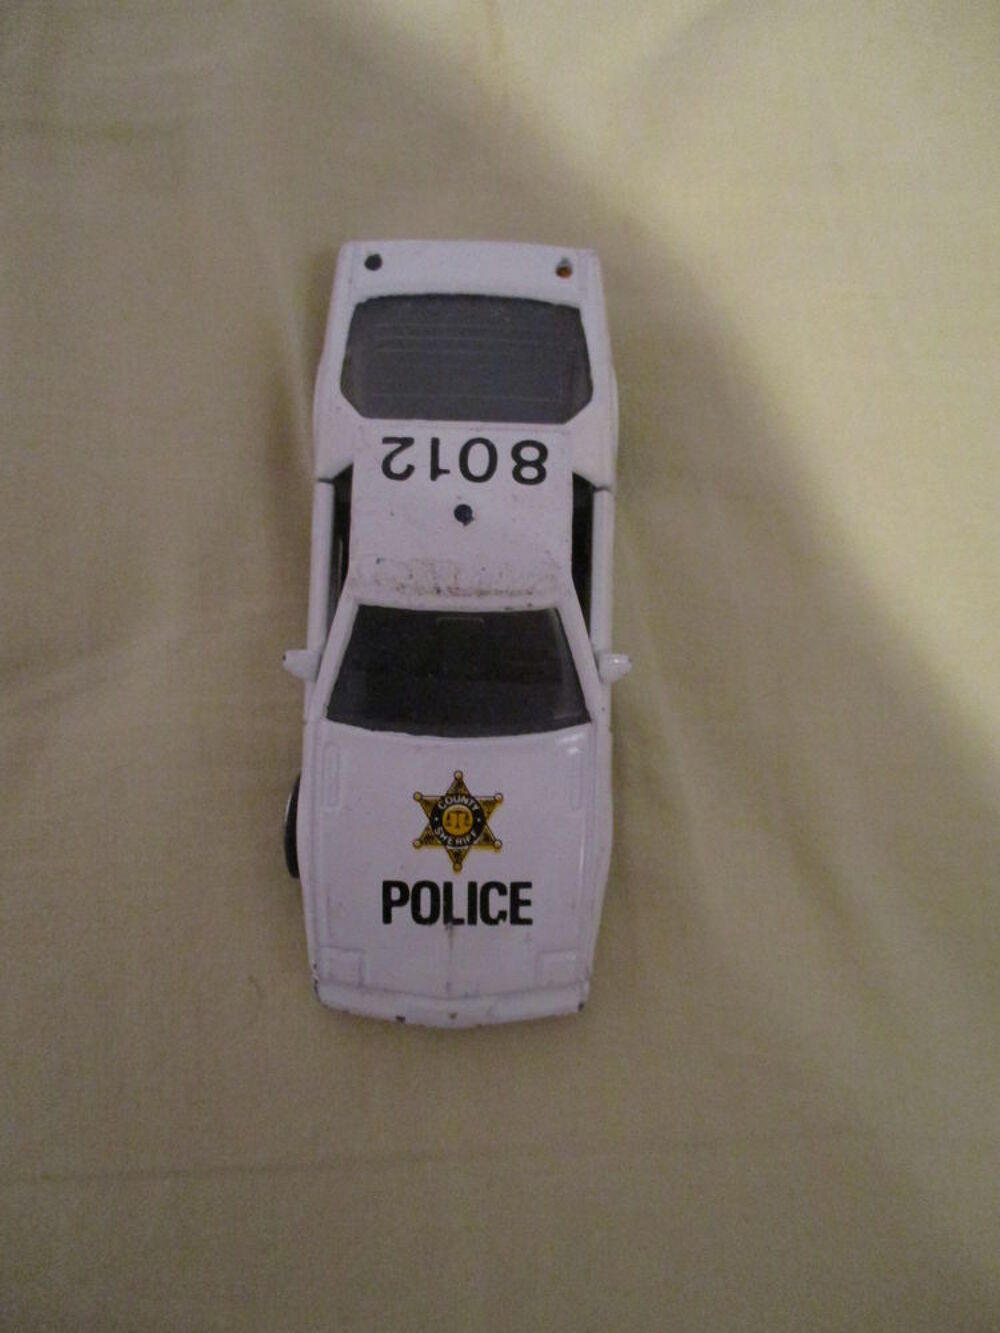 Petite voiture de police les portes s'ouvrent Jeux / jouets